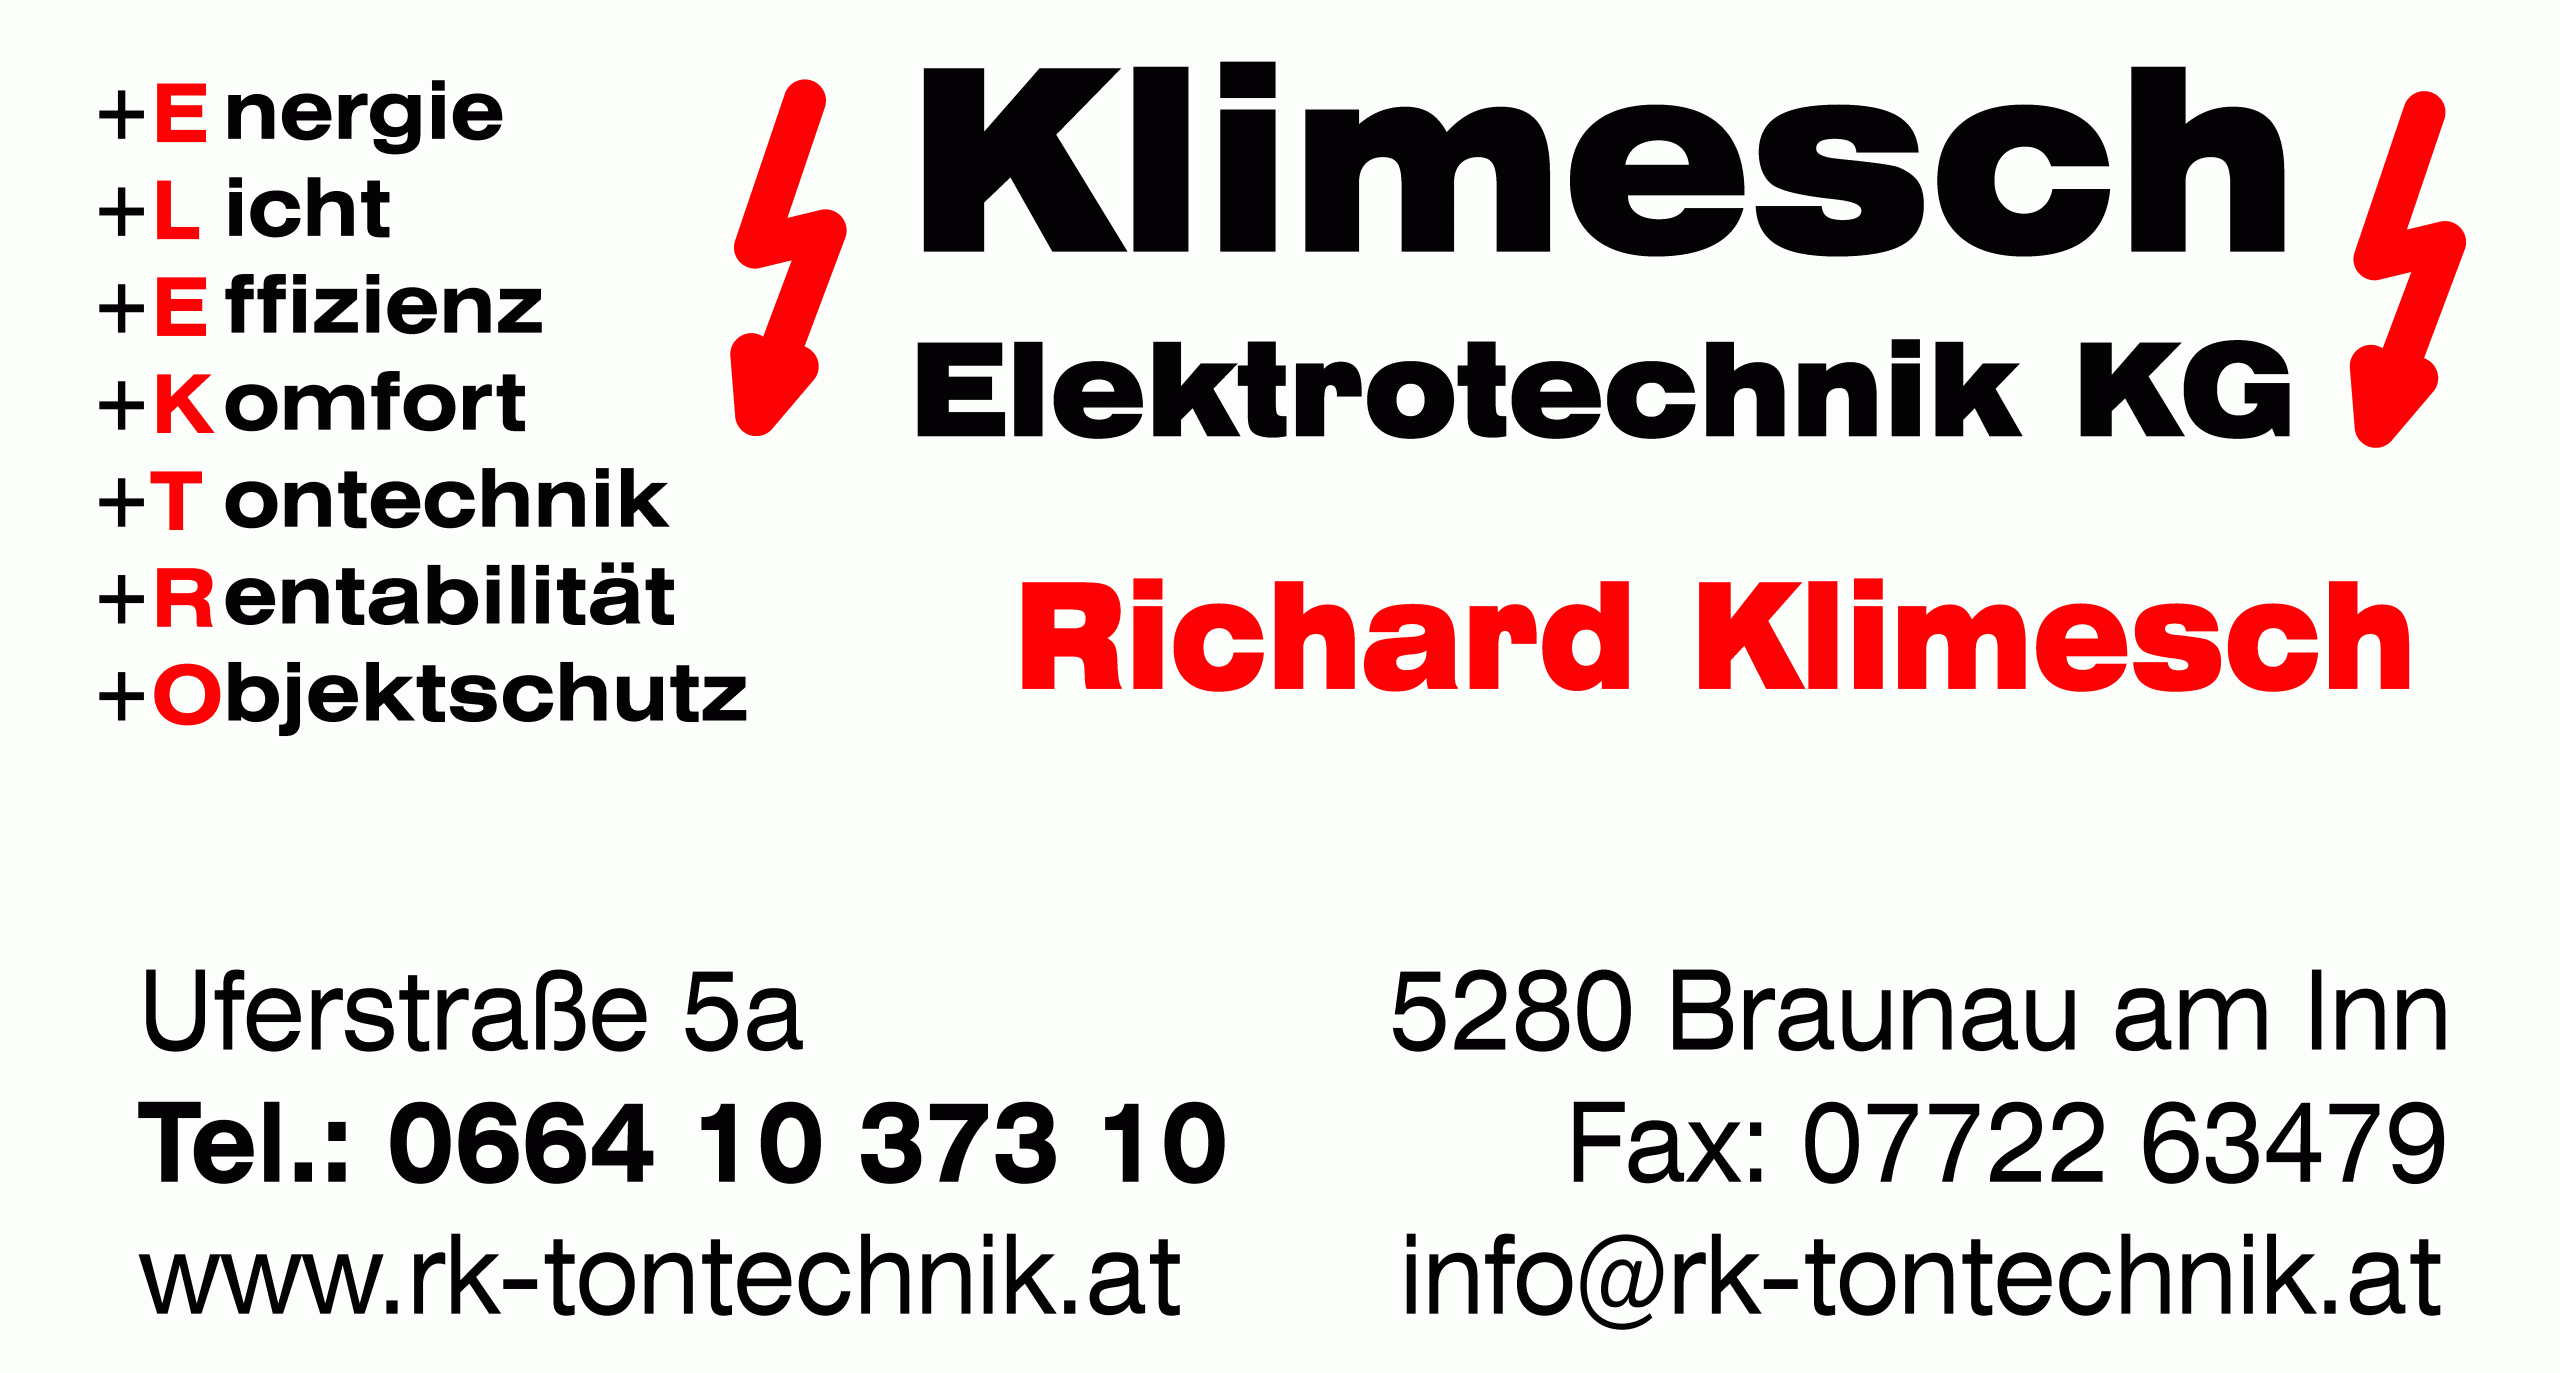 Klimesch Elektrotechnik KG